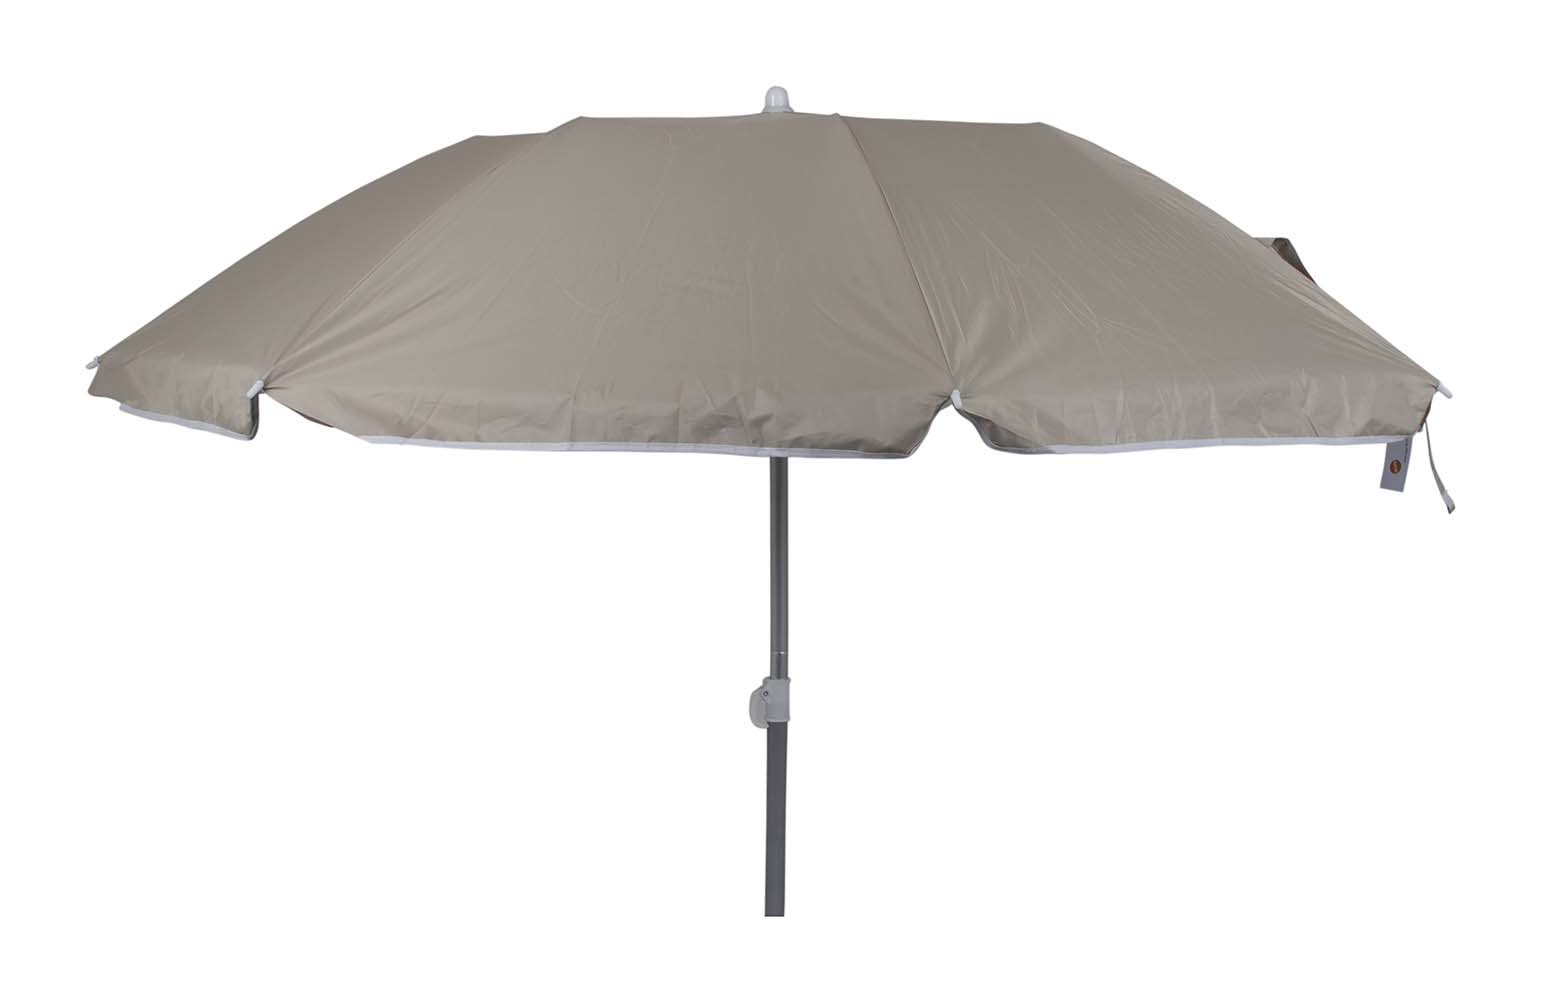 7267278 Een 3-delige parasol met met lichtgewicht aluminium frame. In hoogte verstelbaar. Zeer gehikt voor in het zand, in een parasolvoet of in een tafelopening. De parasol is erg compact (Ø 13x67,5 cm) dus gemakkelijk mee te nemen. Daarnaast is de onderzijde voorzien van een zilvercoating voor extra UV wering. De steel van de parasol heeft een diameter van 25 millimeter.